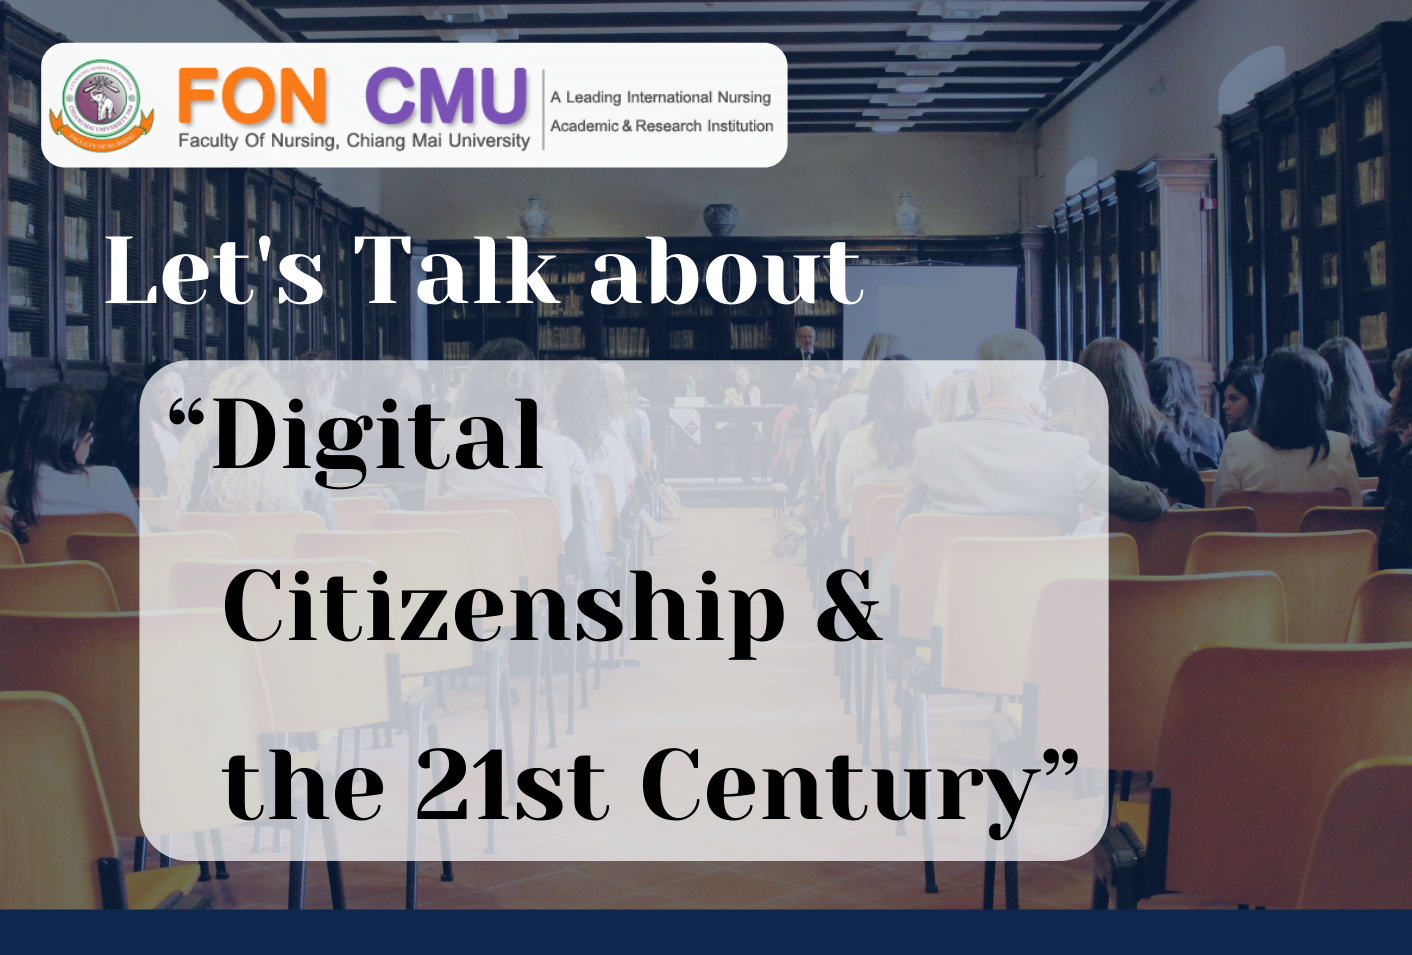 
	โครงการอบรมความเป็นพลเมืองดิจิทัล' & คนของศตวรรษที่ 21 (Digital citizenship & the 21st Century) สำหรับนักศึกษาระดับบัณฑิตศึกษา
